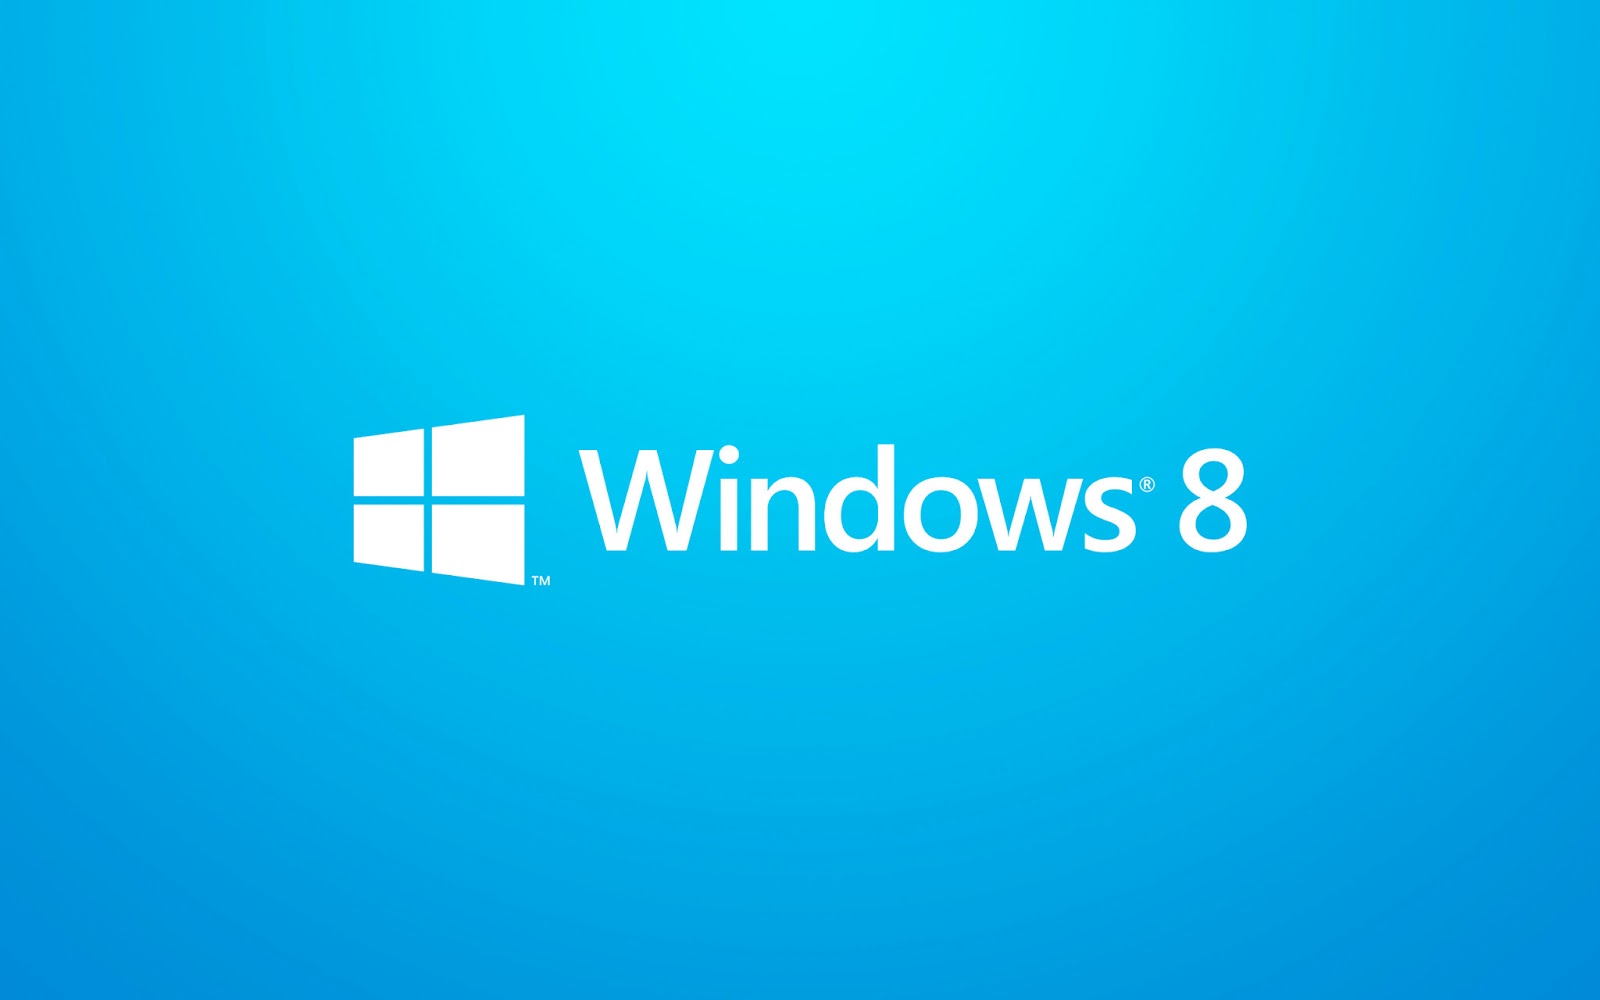 Đừng bỏ lỡ cơ hội sở hữu những hình nền Windows 8 tuyệt đẹp mà chúng tôi giới thiệu. Bộ sưu tập này hoàn toàn miễn phí và có nhiều chủ đề khác nhau cho bạn lựa chọn. Hãy truy cập vào đường dẫn để khám phá thế giới hình nền Windows 8 đầy thú vị này.